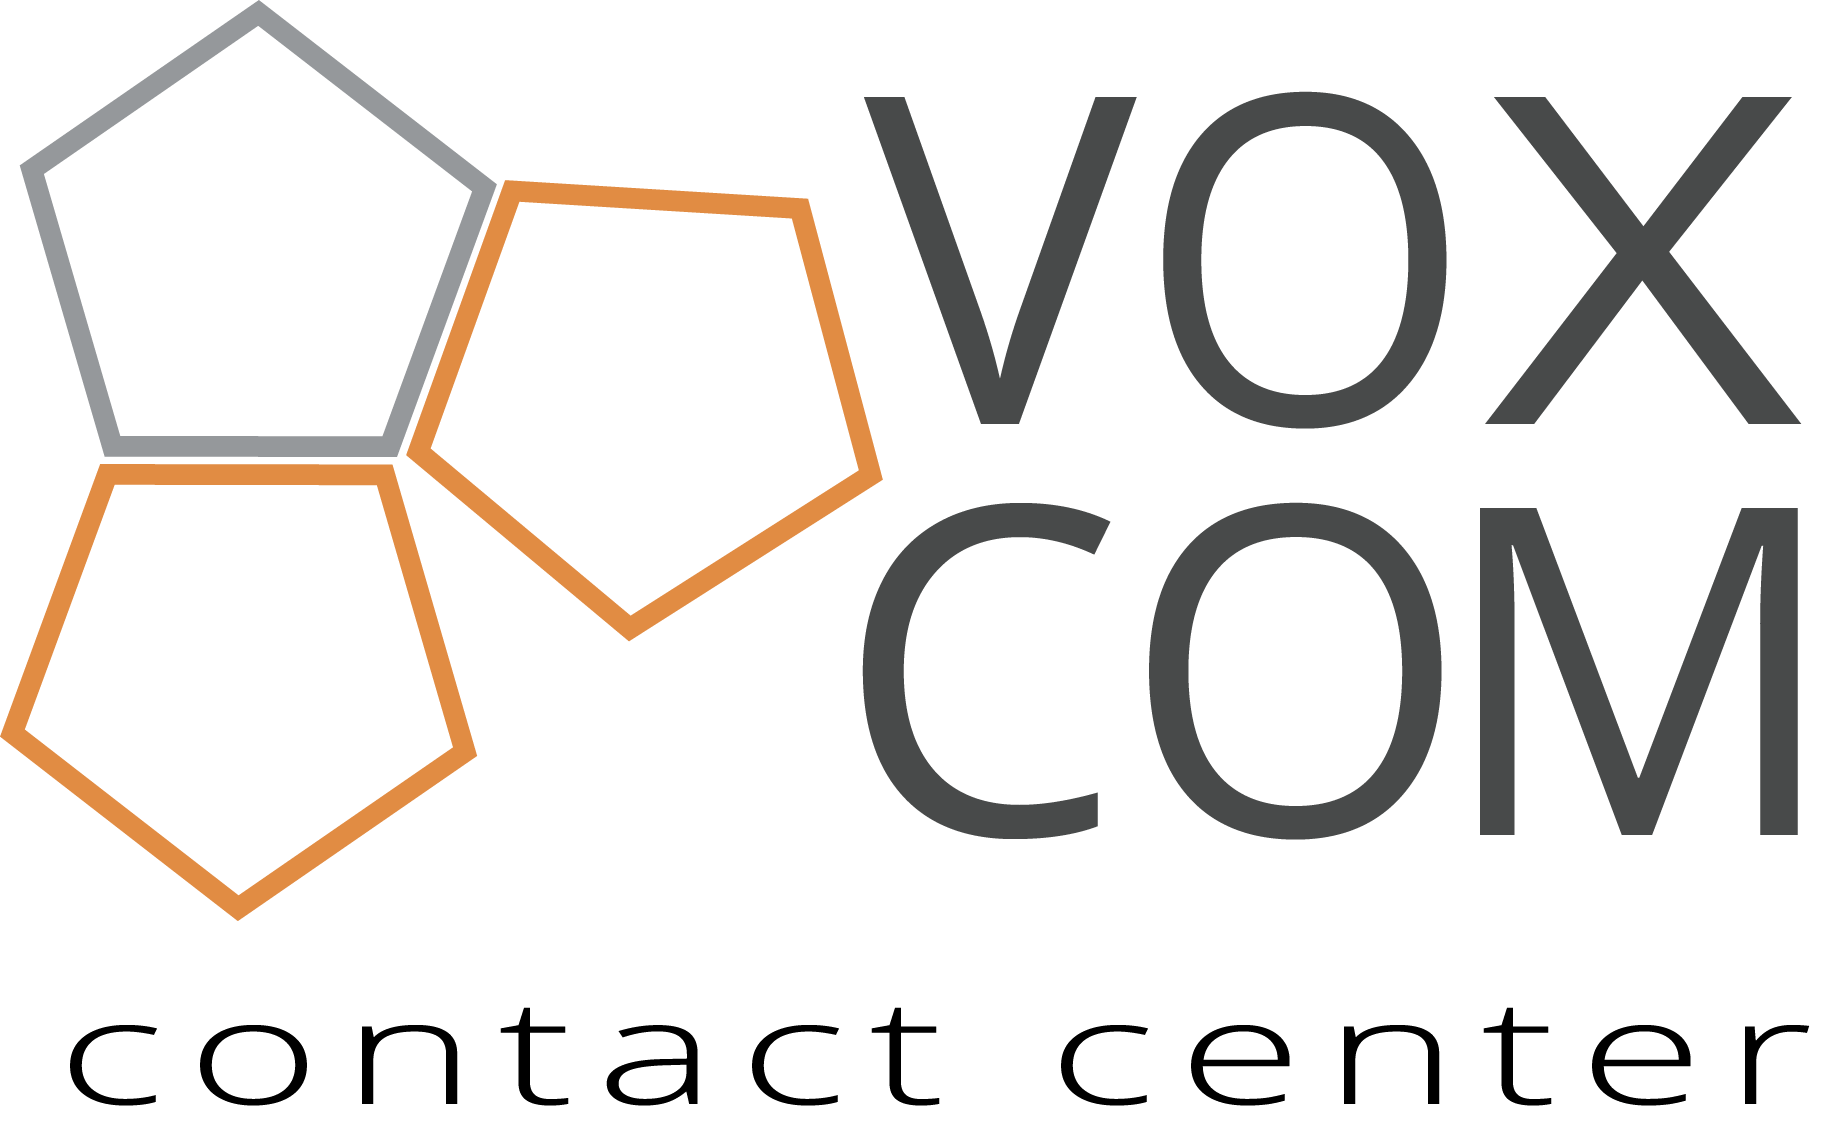 Vox Com logo